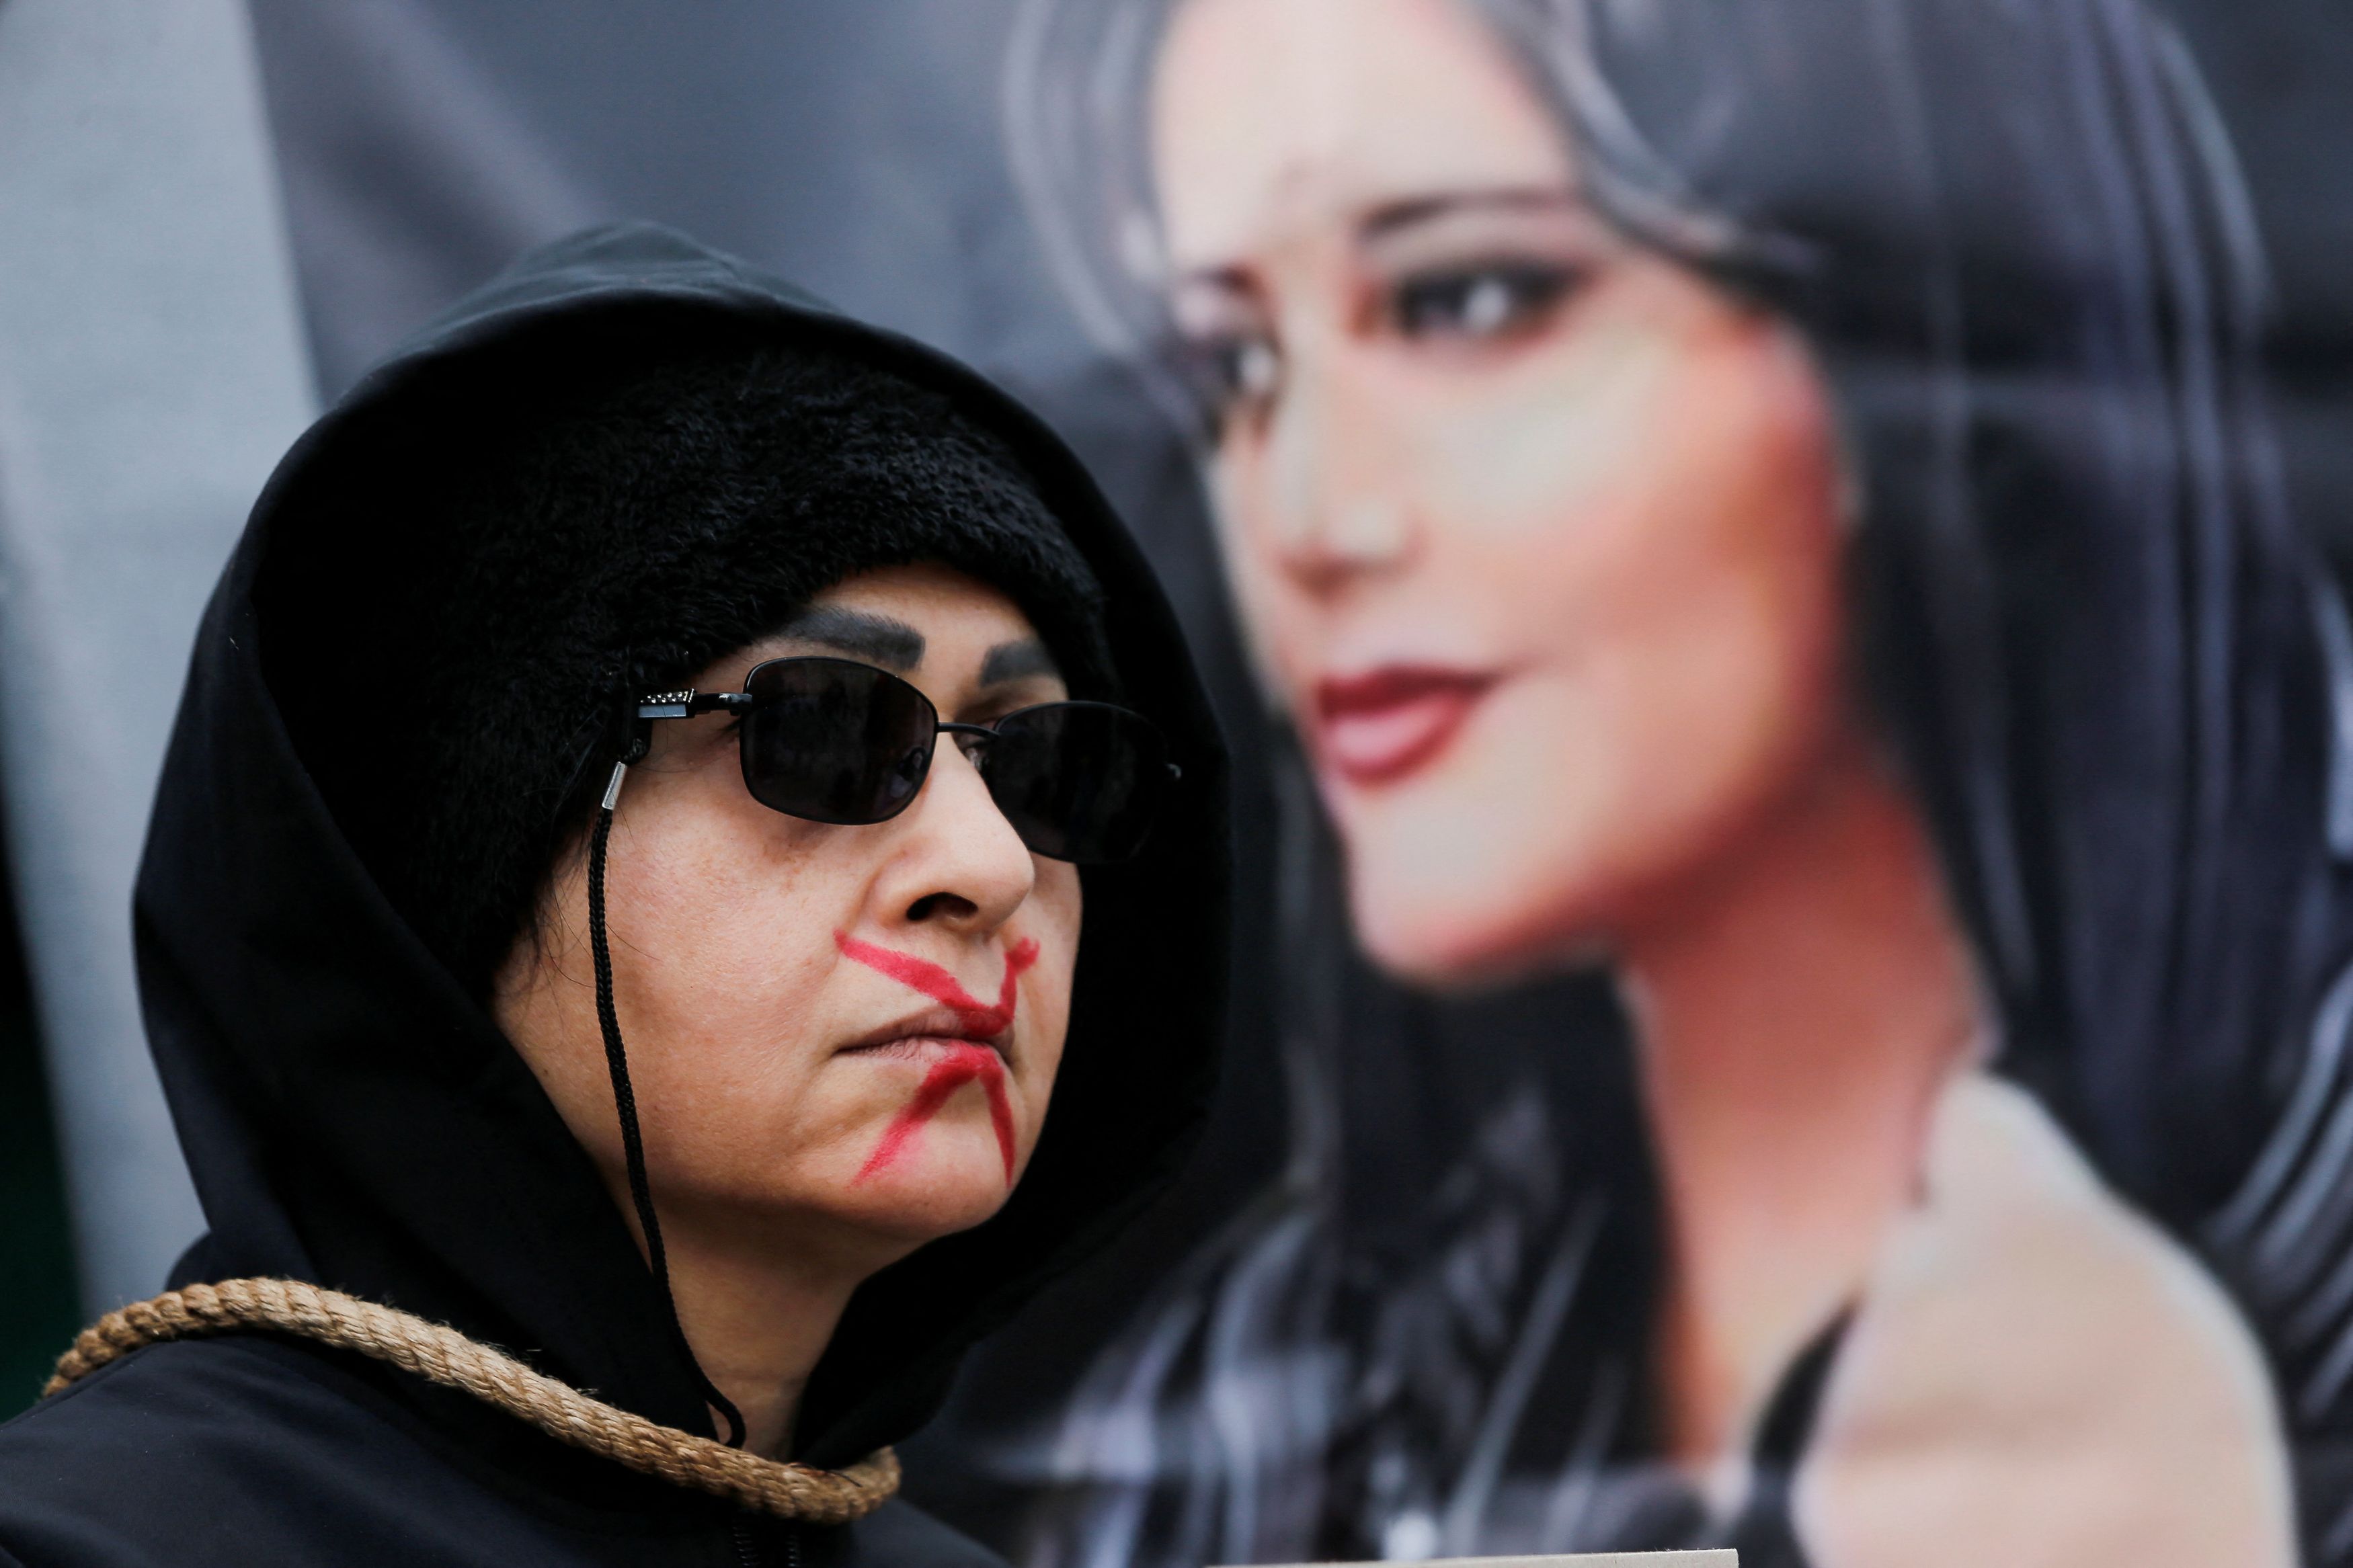 Ιράν: Κρύβοντας ακτιβιστές σε κοινή θέα - Το δίκτυο των πολιτών που προστατεύει τους διαδηλωτές